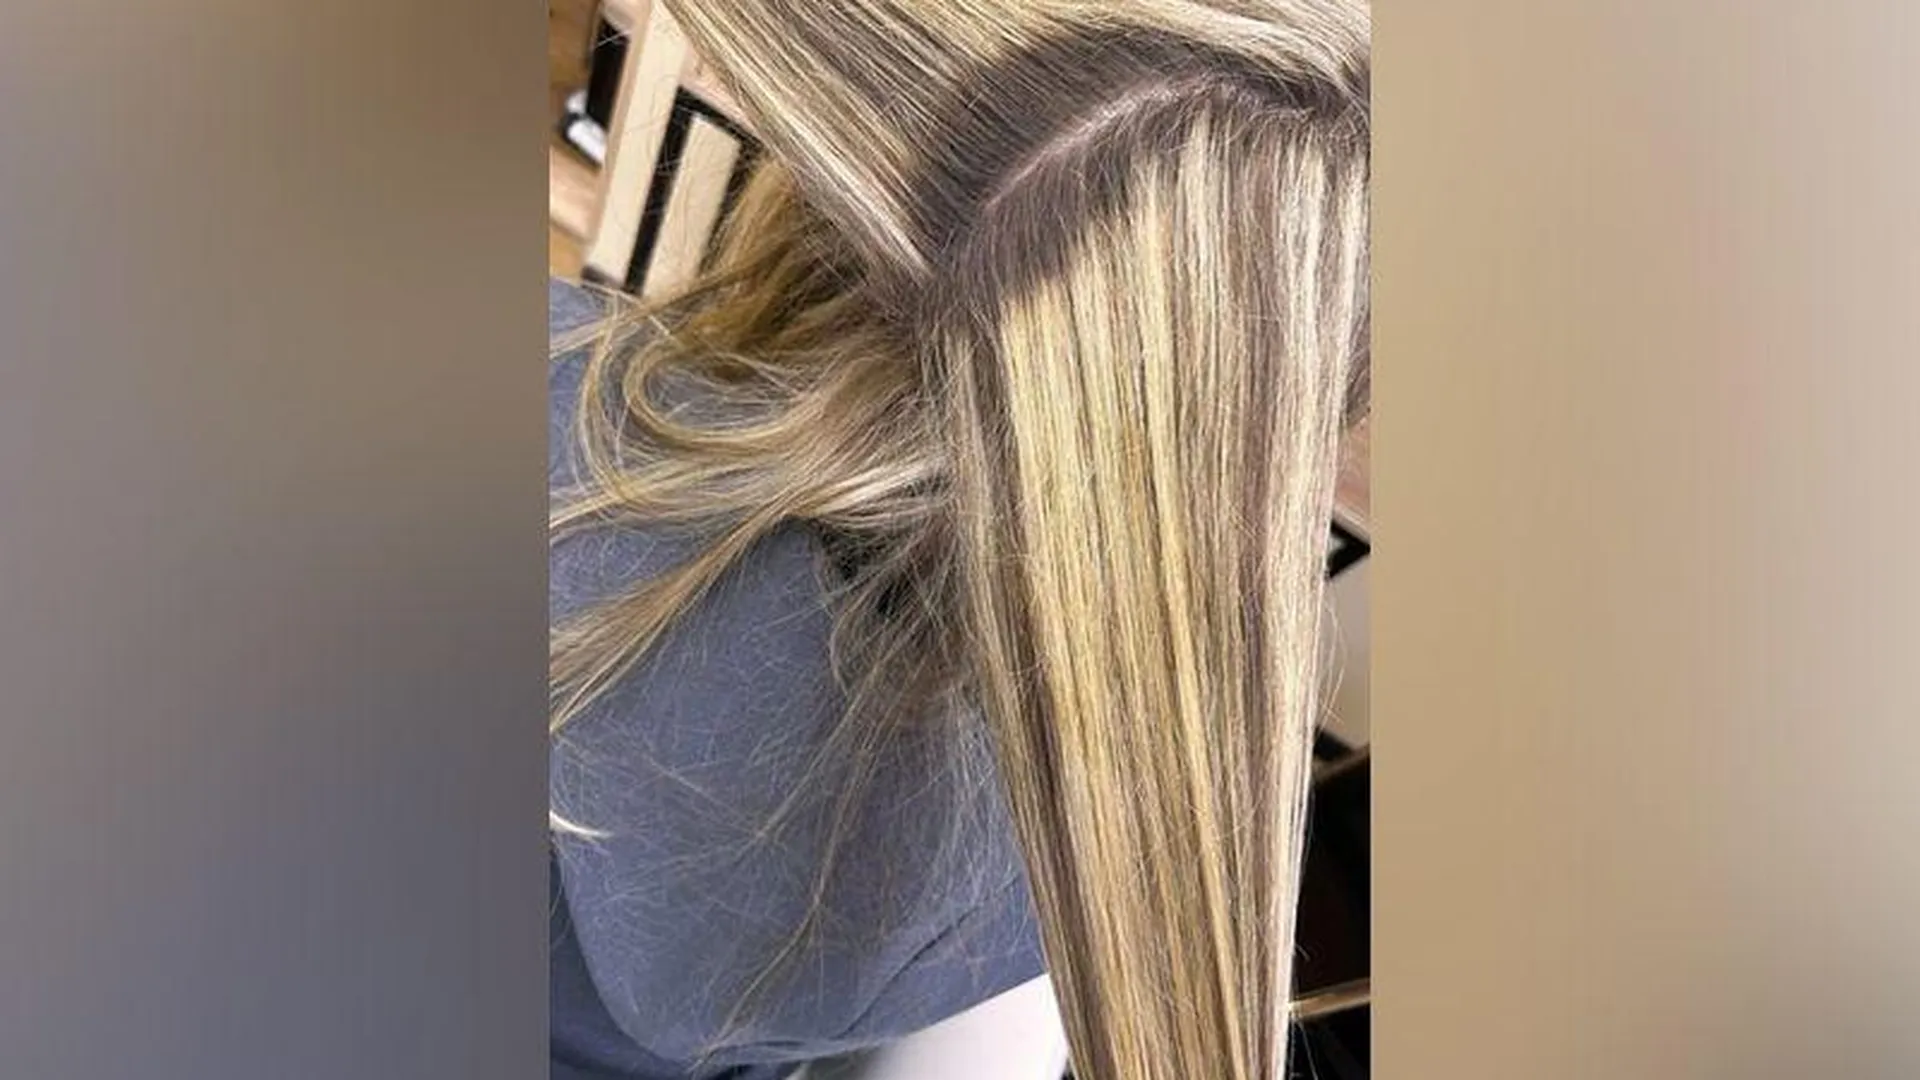 «Получила сожженные пряди»: в Смоленске парикмахер испортила женщине волосы